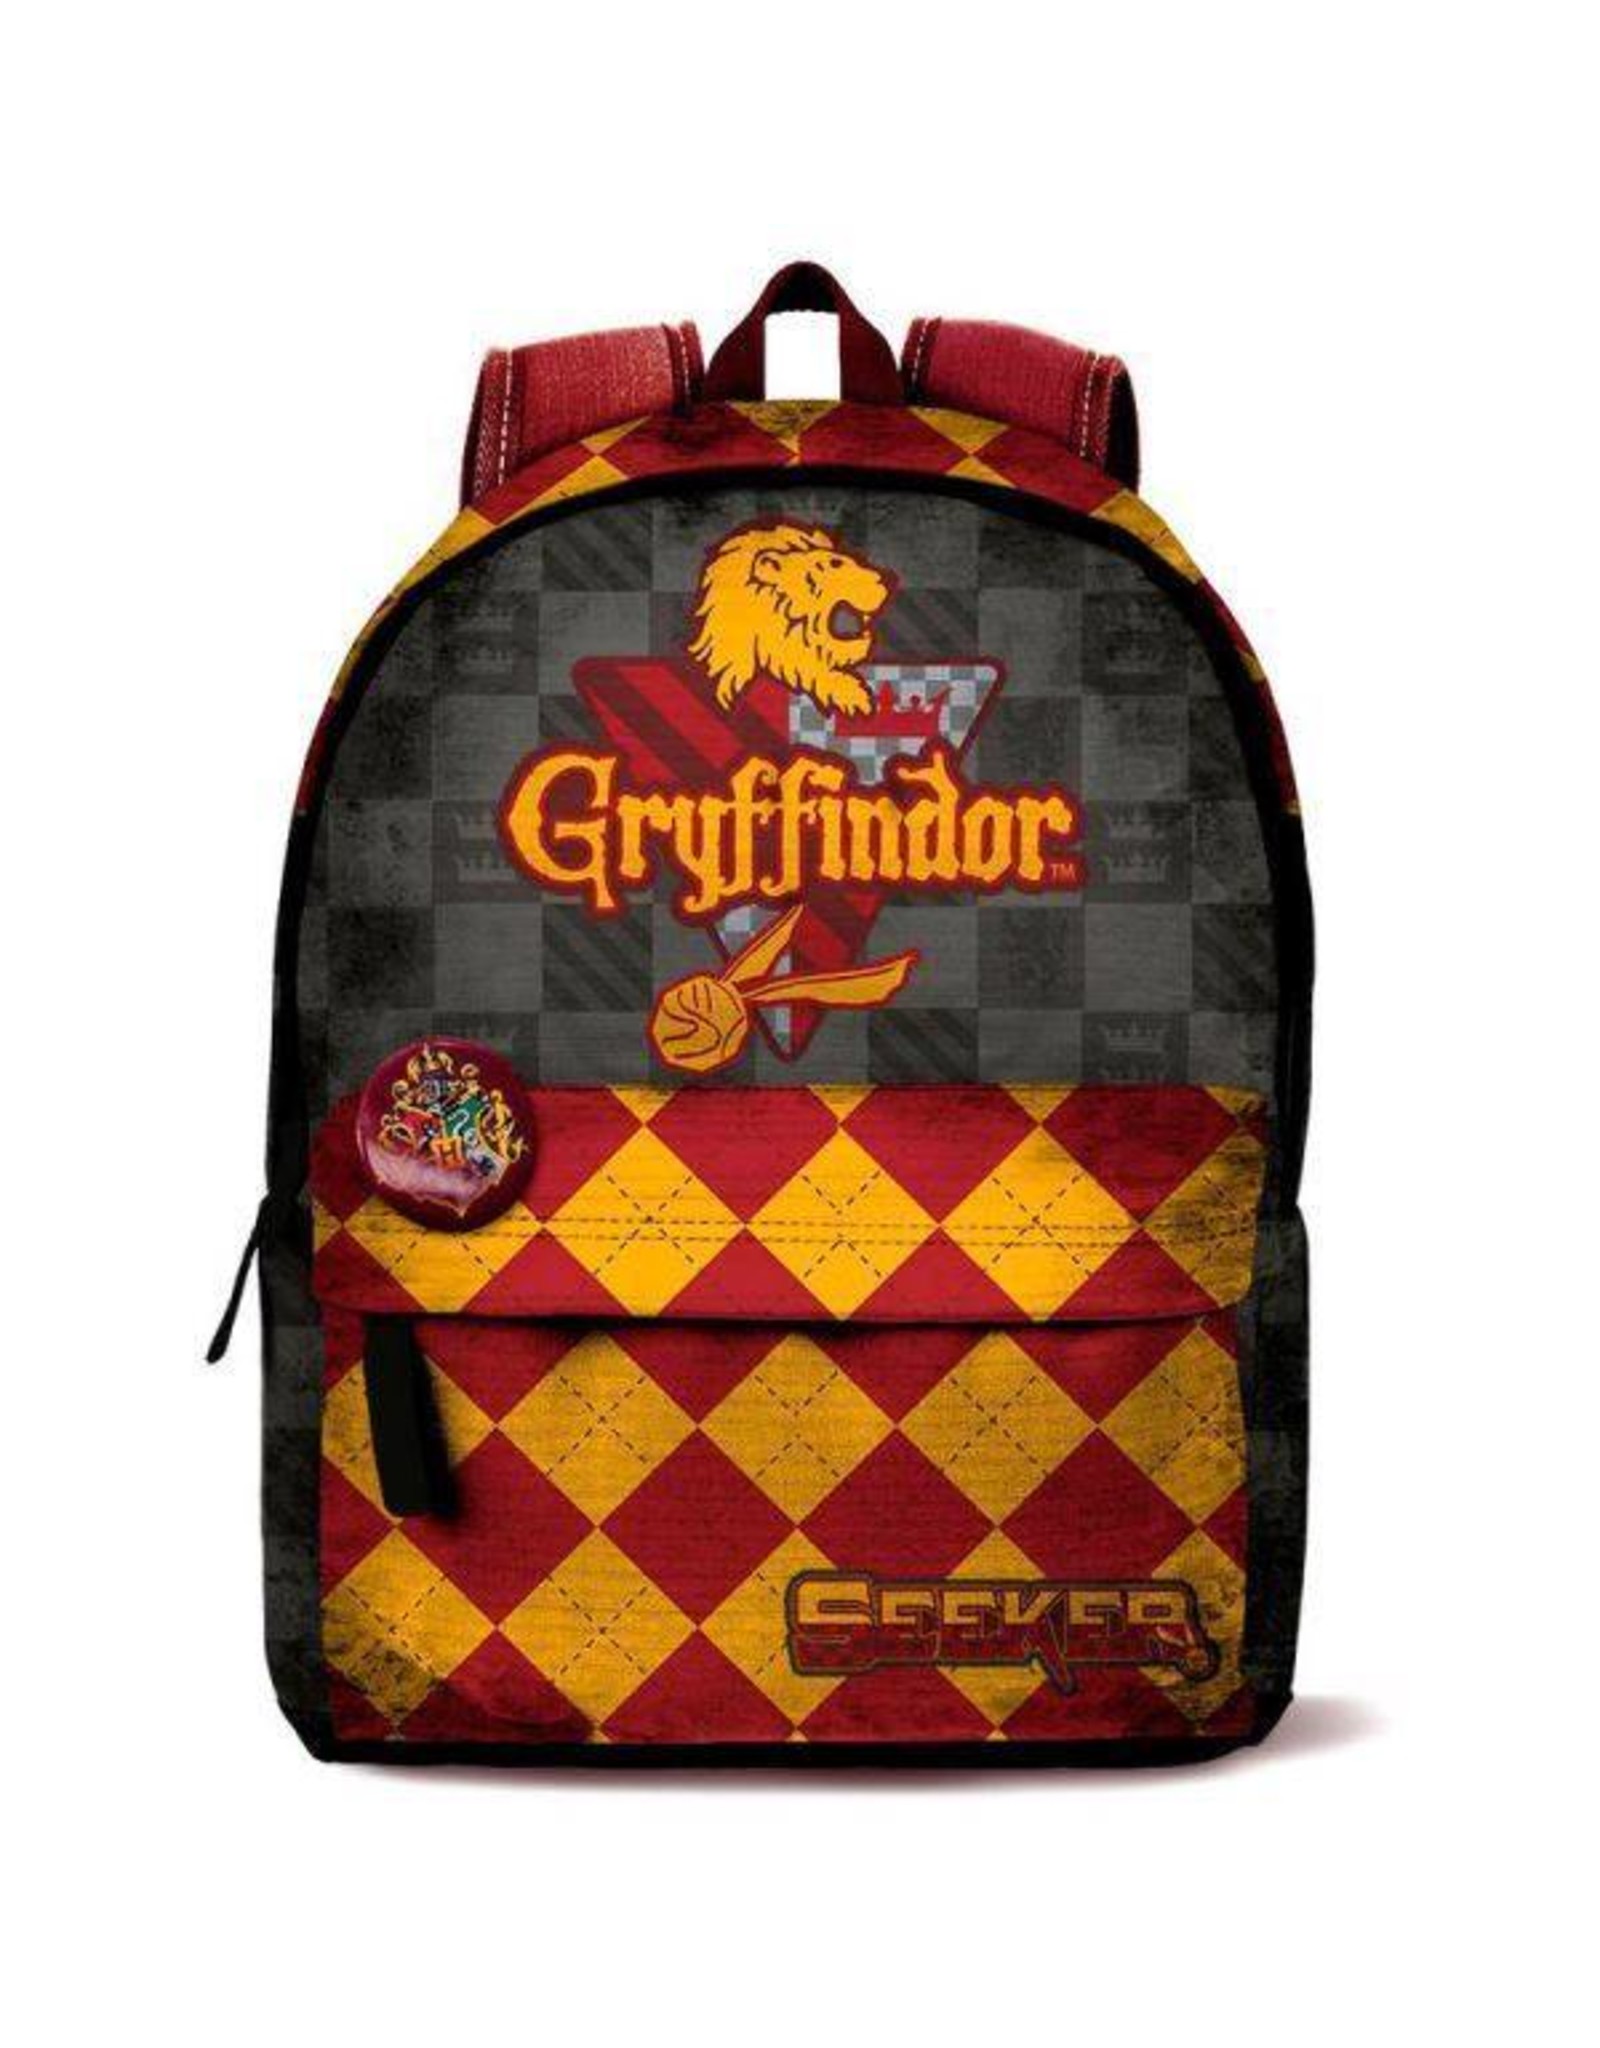 Harry Potter Harry Potter bags - Harry Potter backpack Quidditch Gryffindor